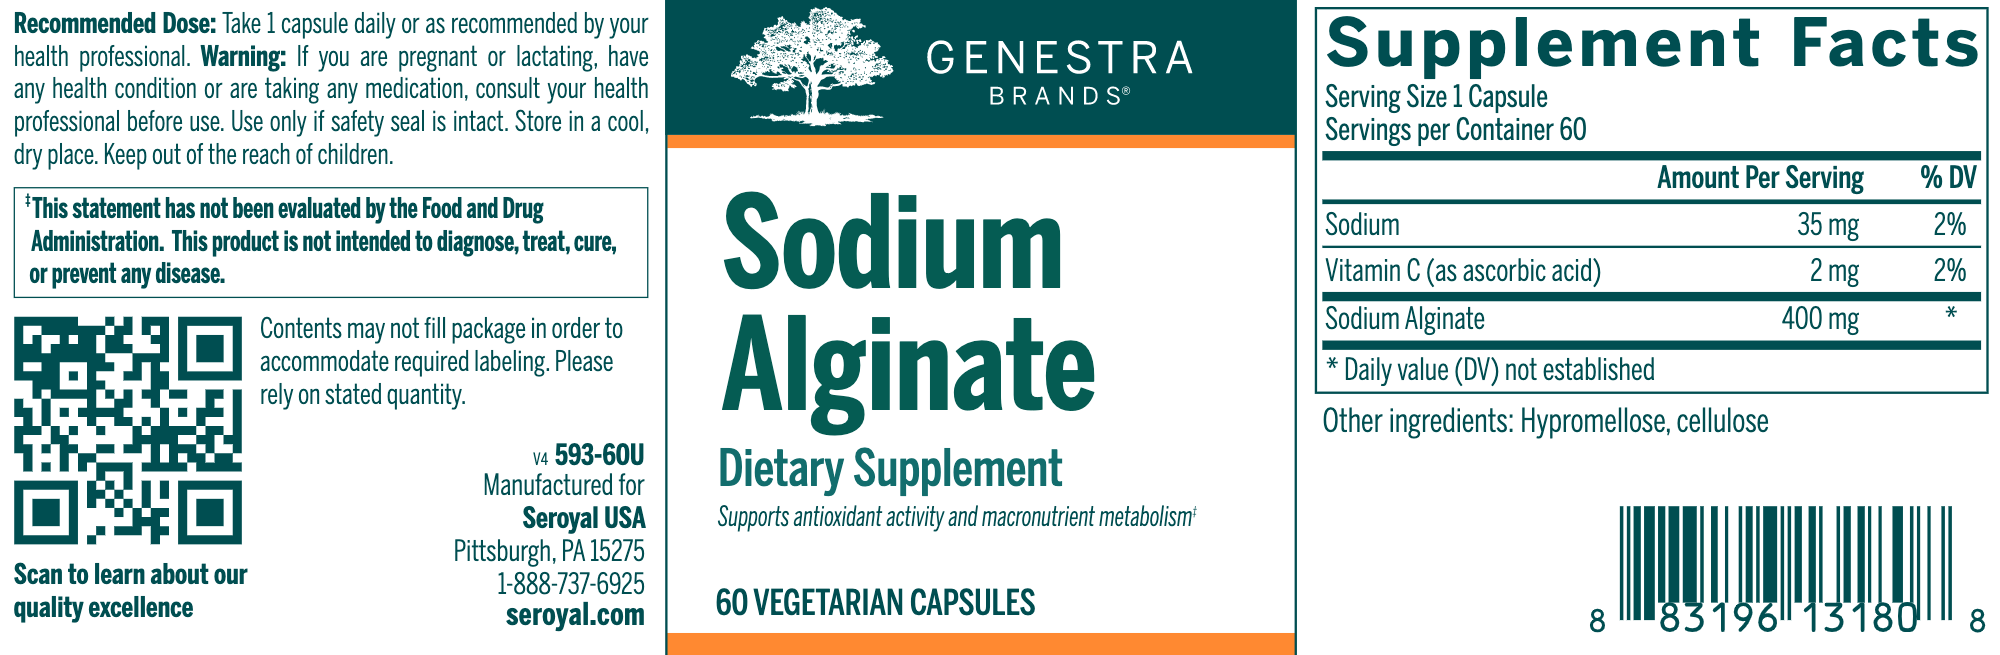 Sodium Alginate 400 mg